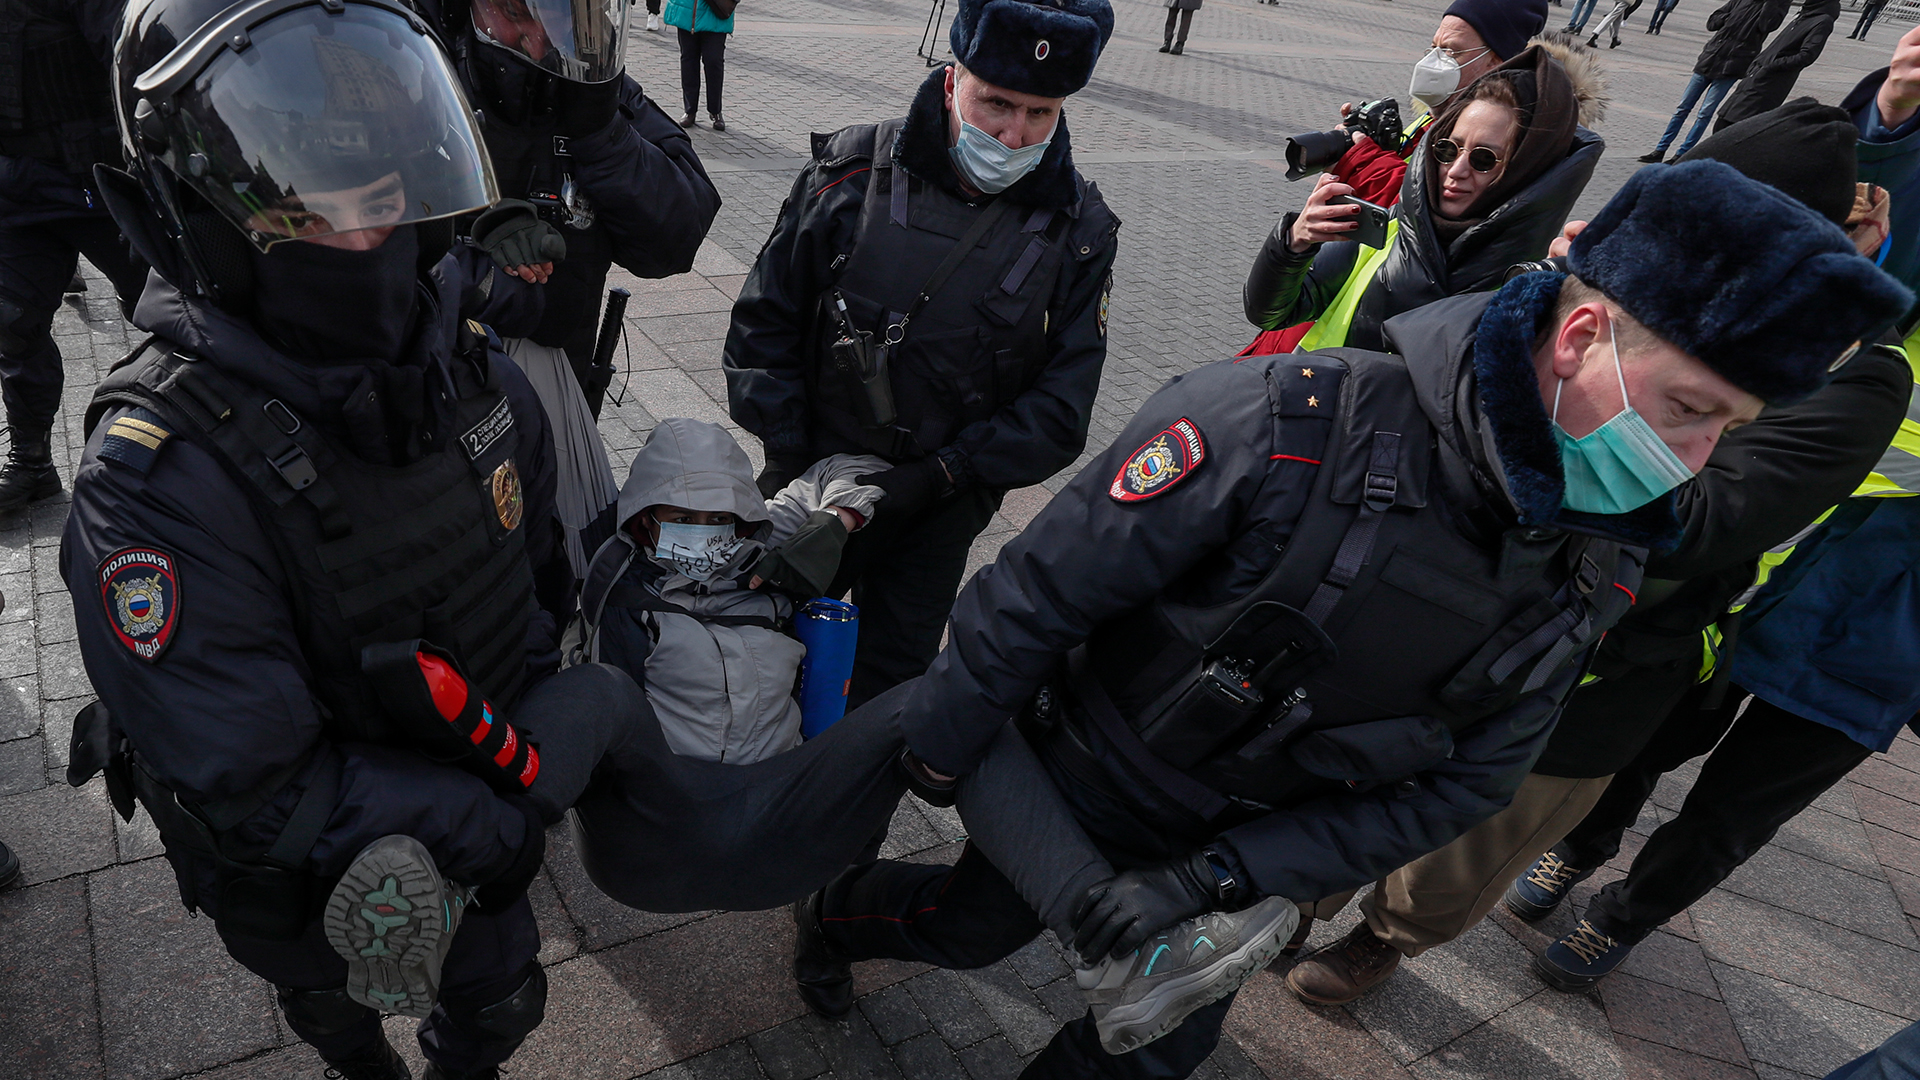 Russische Polizisten nehmen einen Teilnehmer einer nicht autorisierten Kundgebung gegen die russische Invasion in der Ukraine bei einer Demo in Moskau fest. | EPA